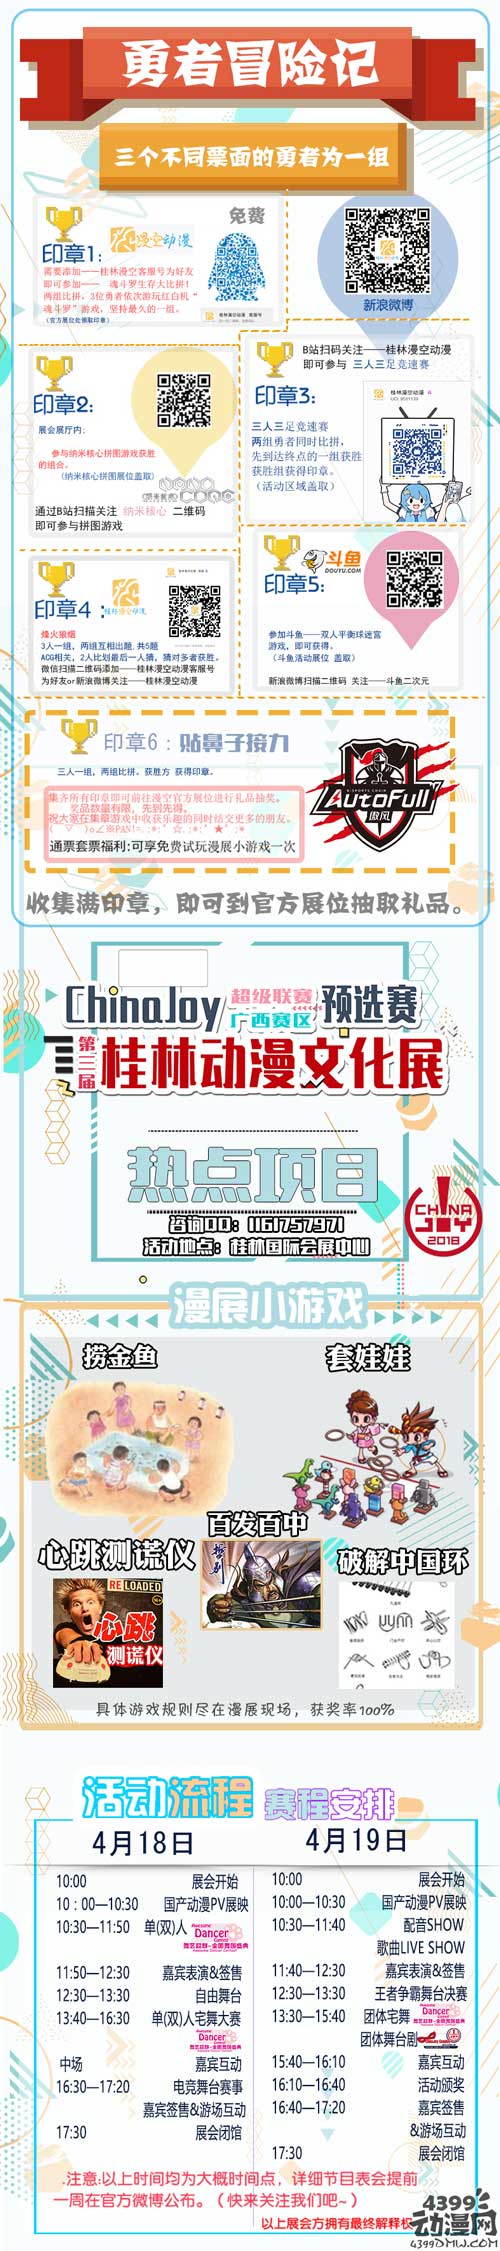 【三宣】第三届桂林动漫文化展 暨Chinajoy 超级联赛广西赛区 预选赛